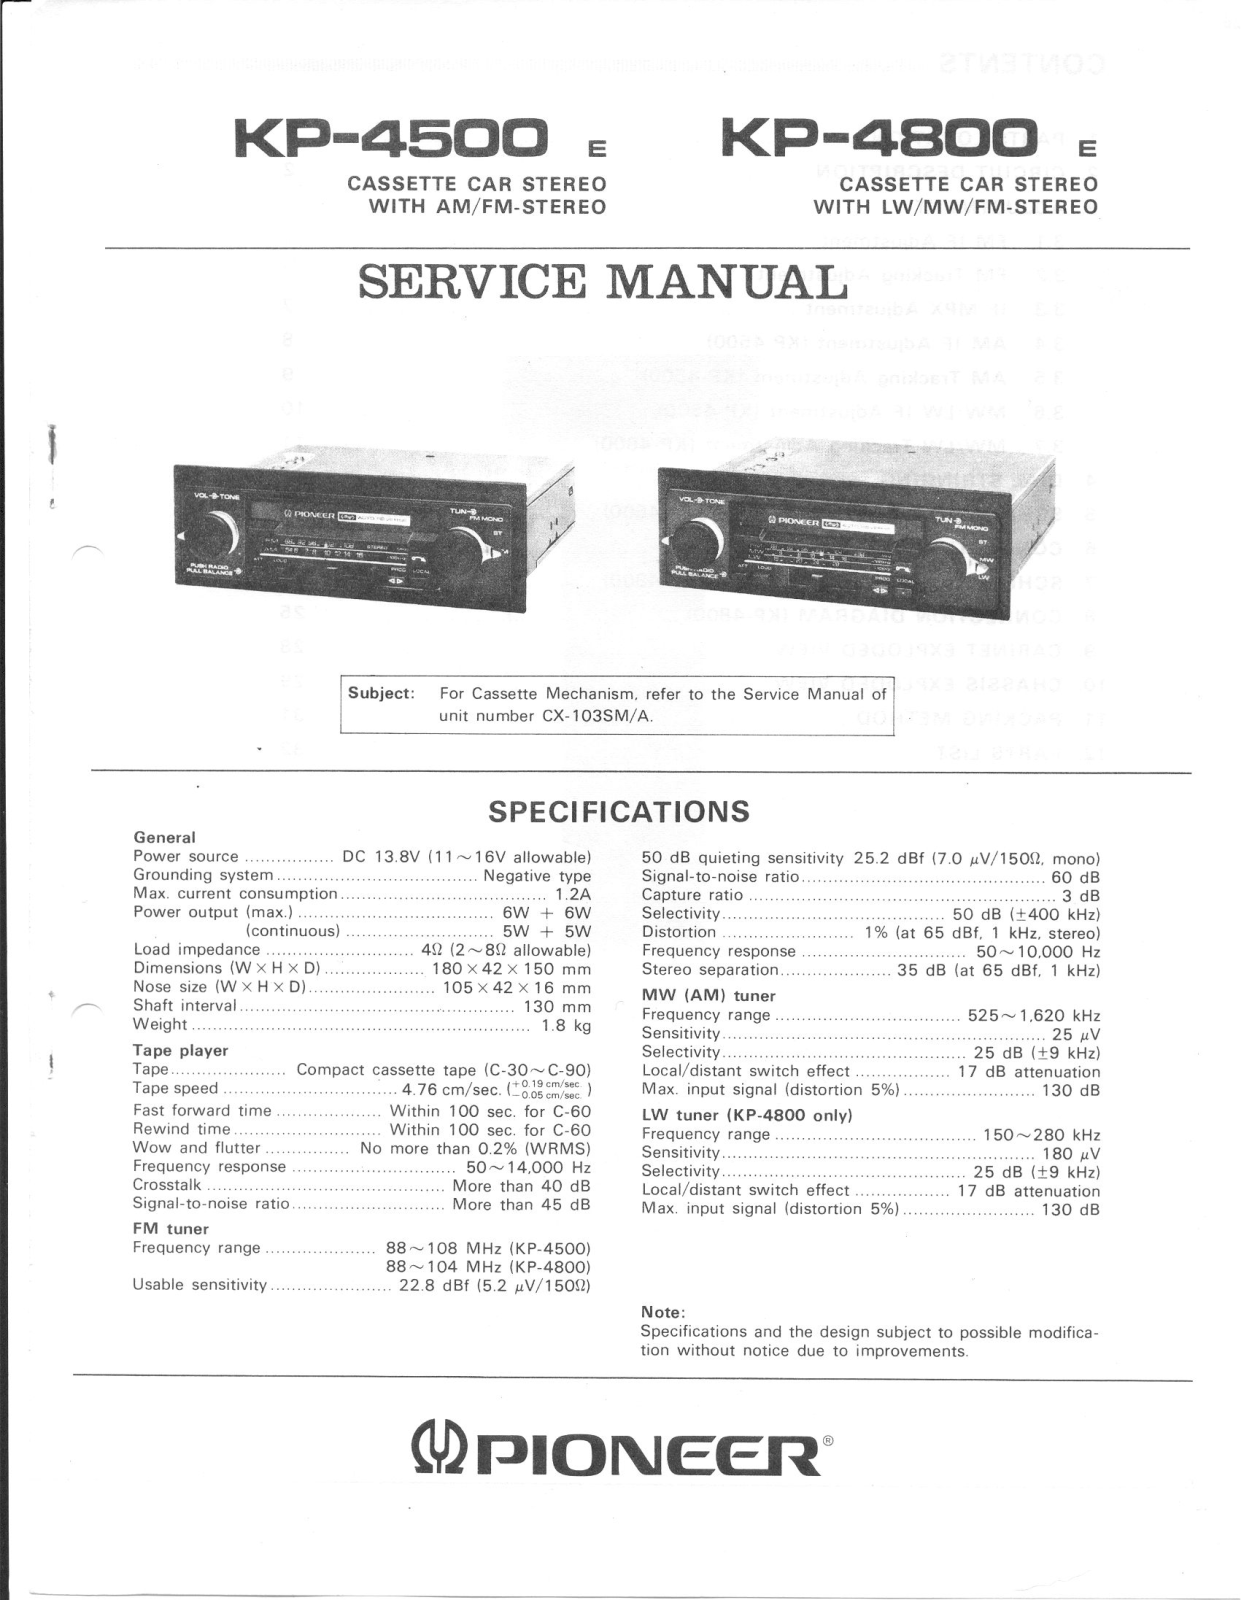 Pioneer KP-4500, KP-4800 Service Manual